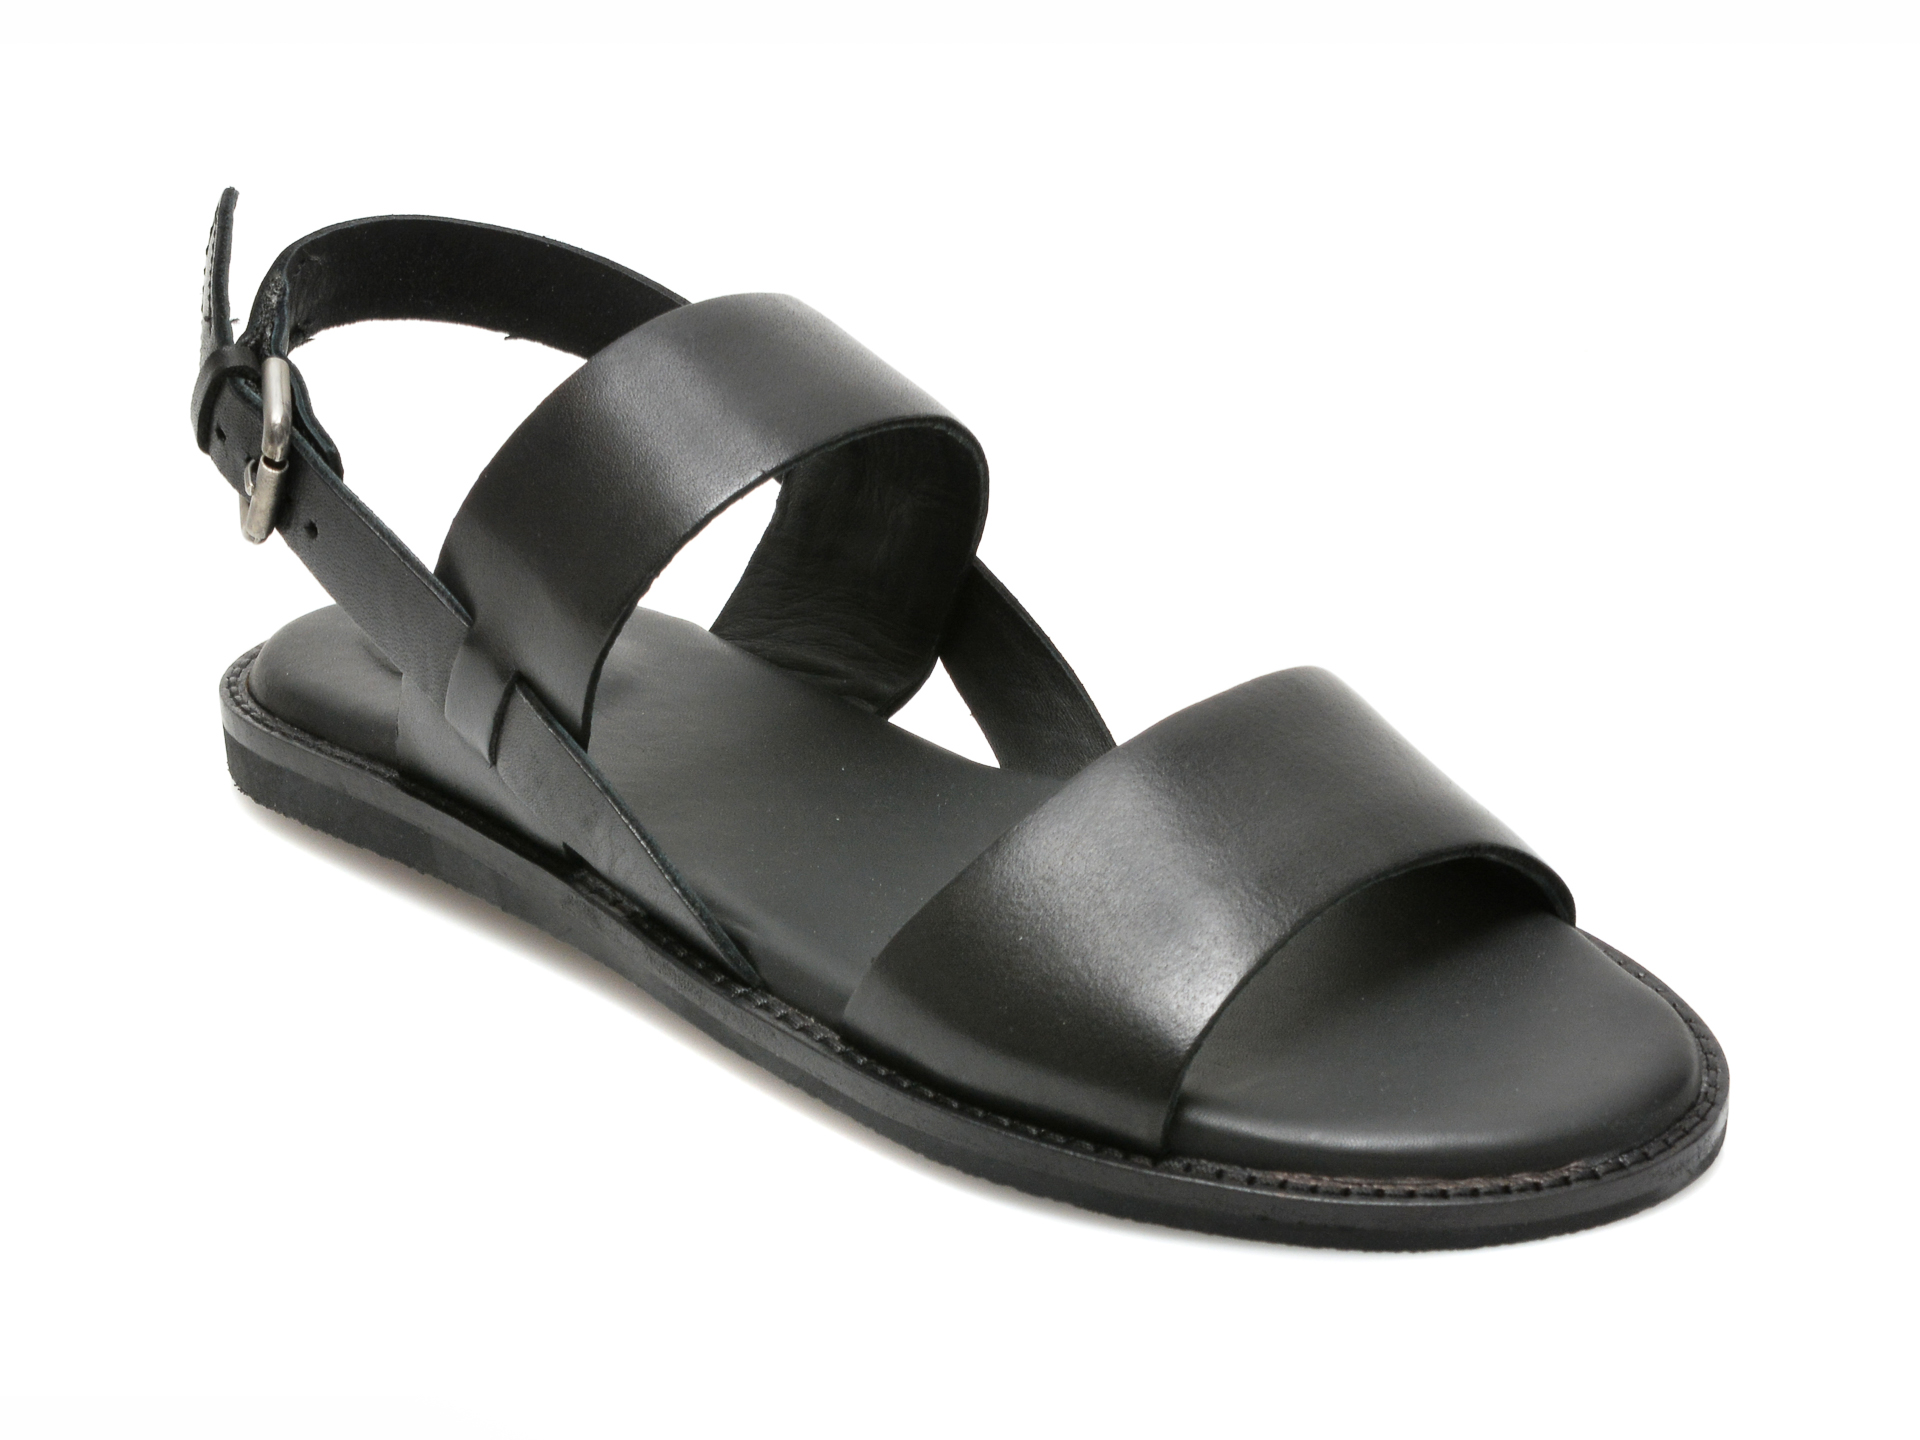 Sandale CLARKS negre, KARSEA STRAP, din piele naturala Clarks